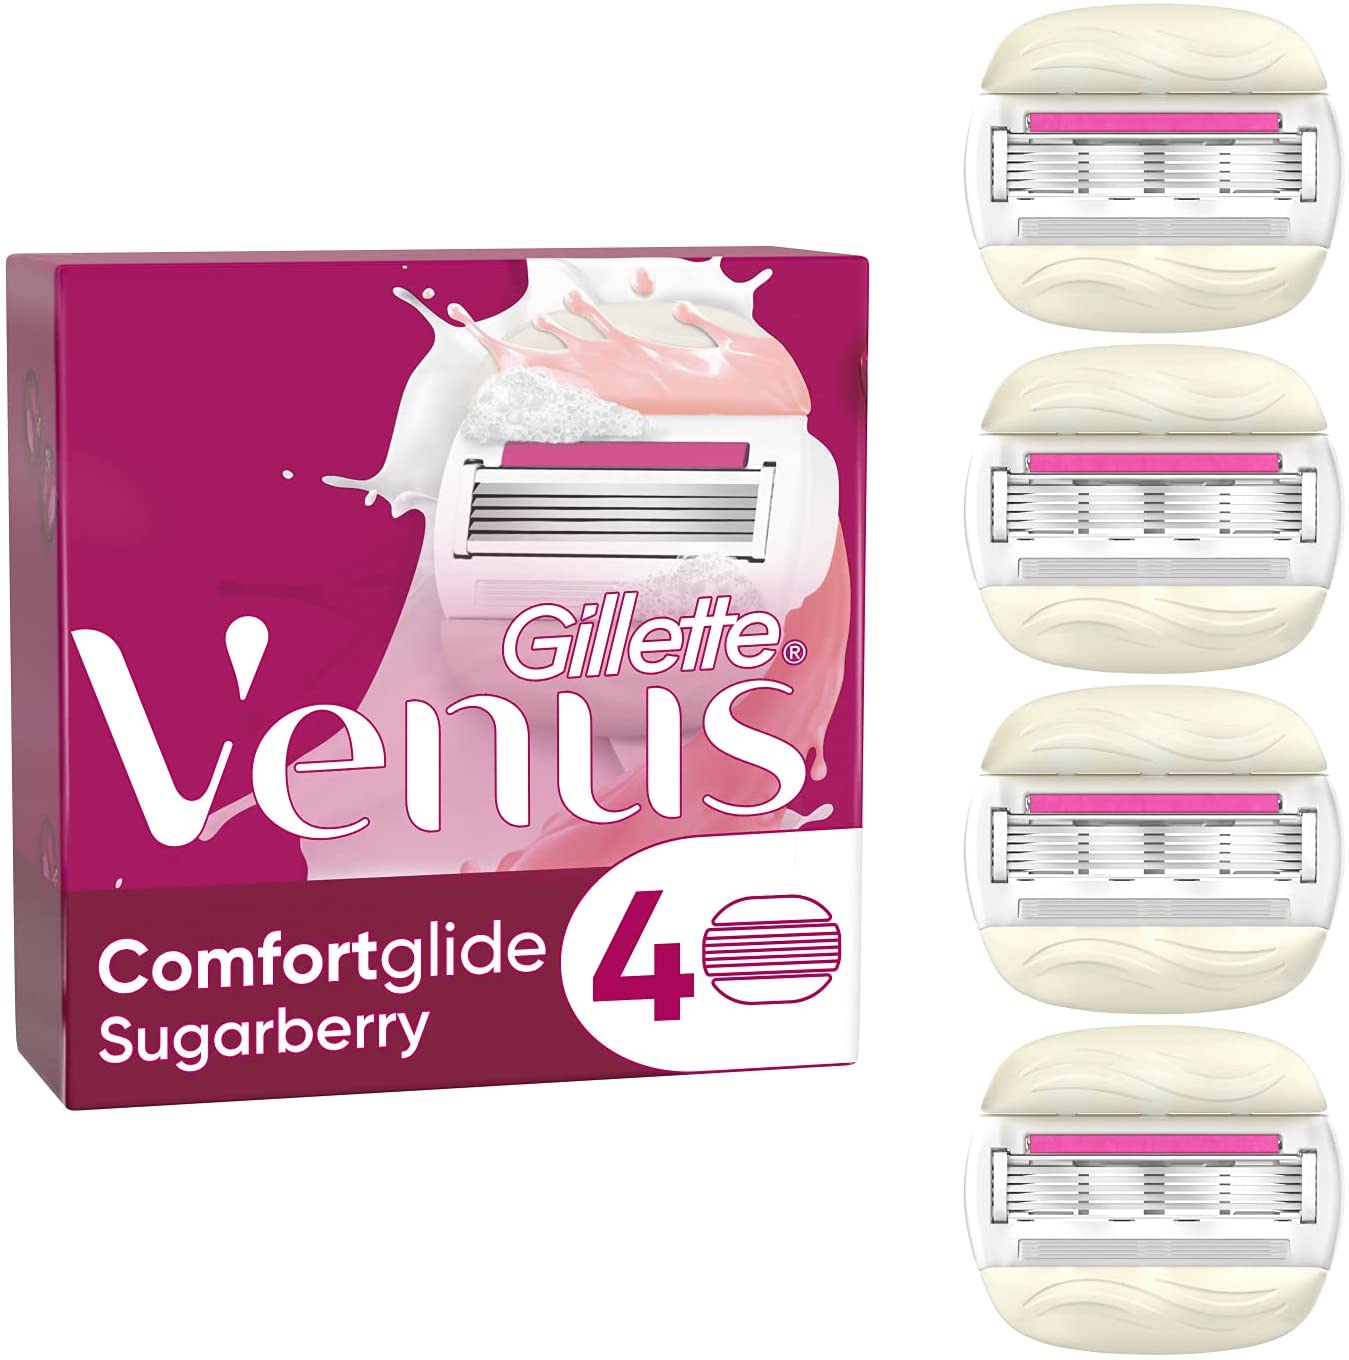 Gillette Venus Comfortglide Sugarberry Rasierklingen (1x4)